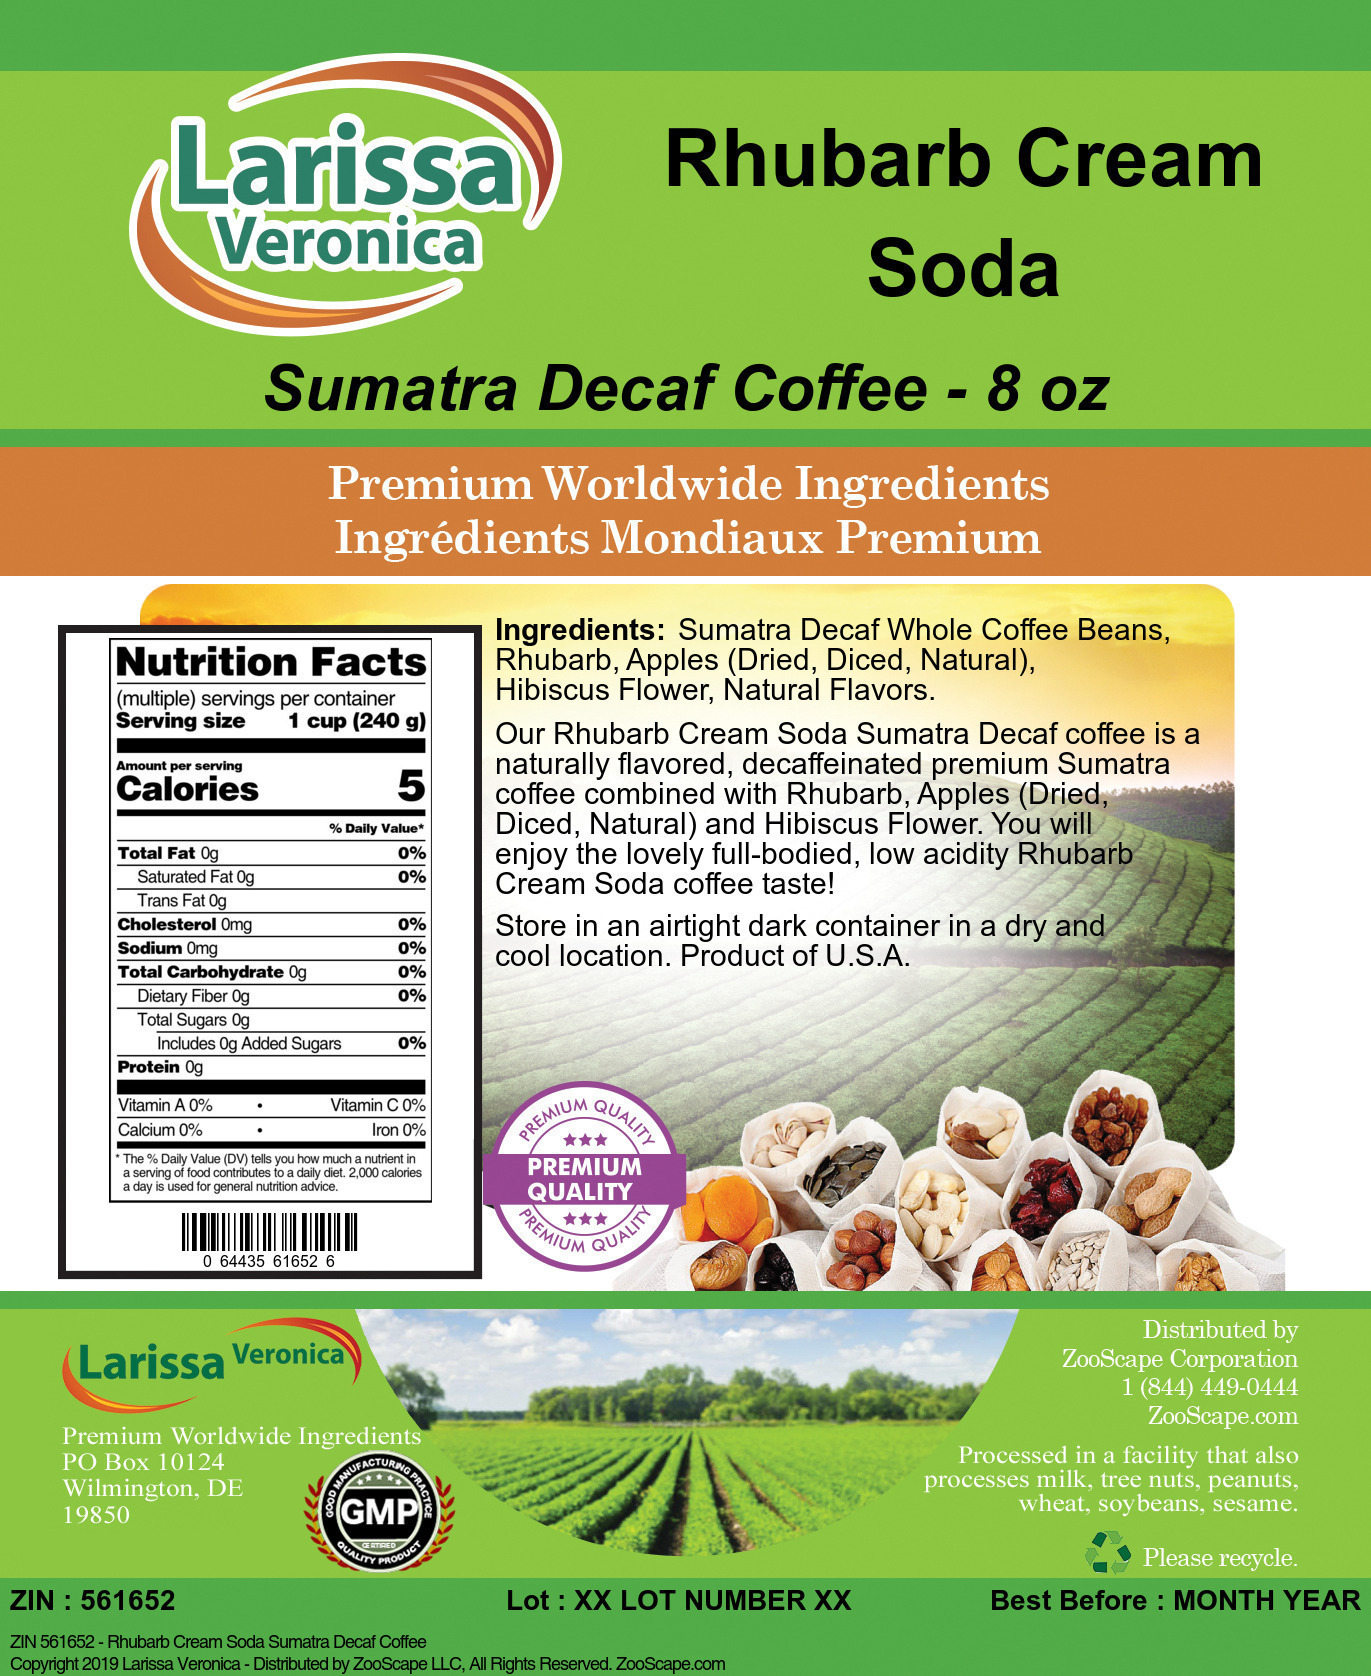 Rhubarb Cream Soda Sumatra Decaf Coffee - Label